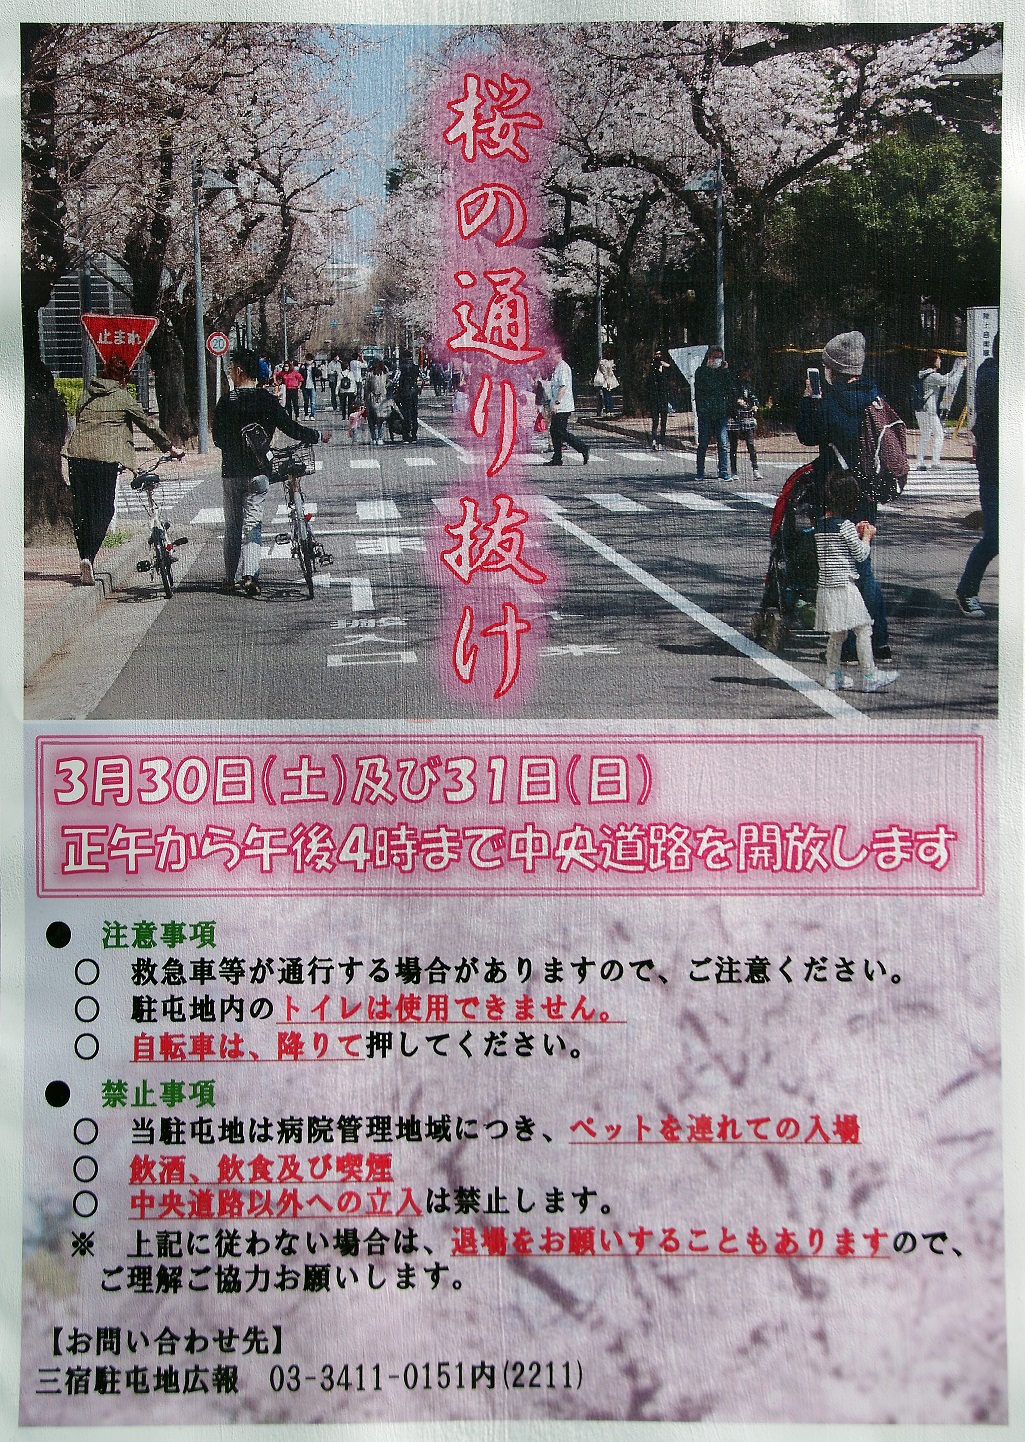 三宿駐屯地桜の通り抜けポスター